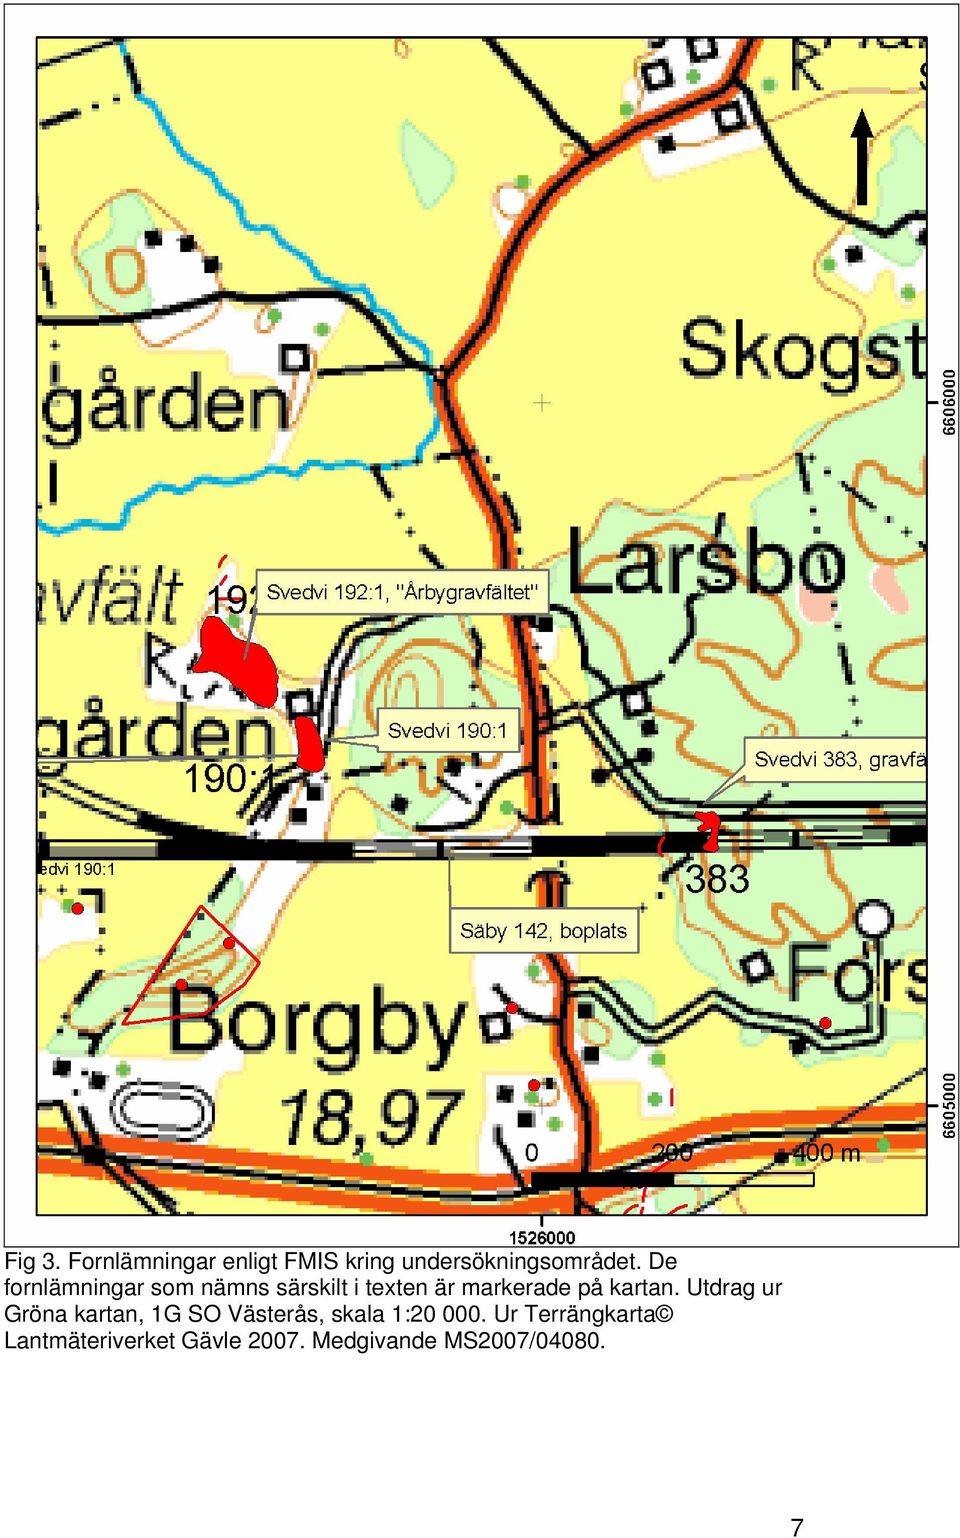 kartan. Utdrag ur Gröna kartan, 1G SO Västerås, skala 1:20 000.